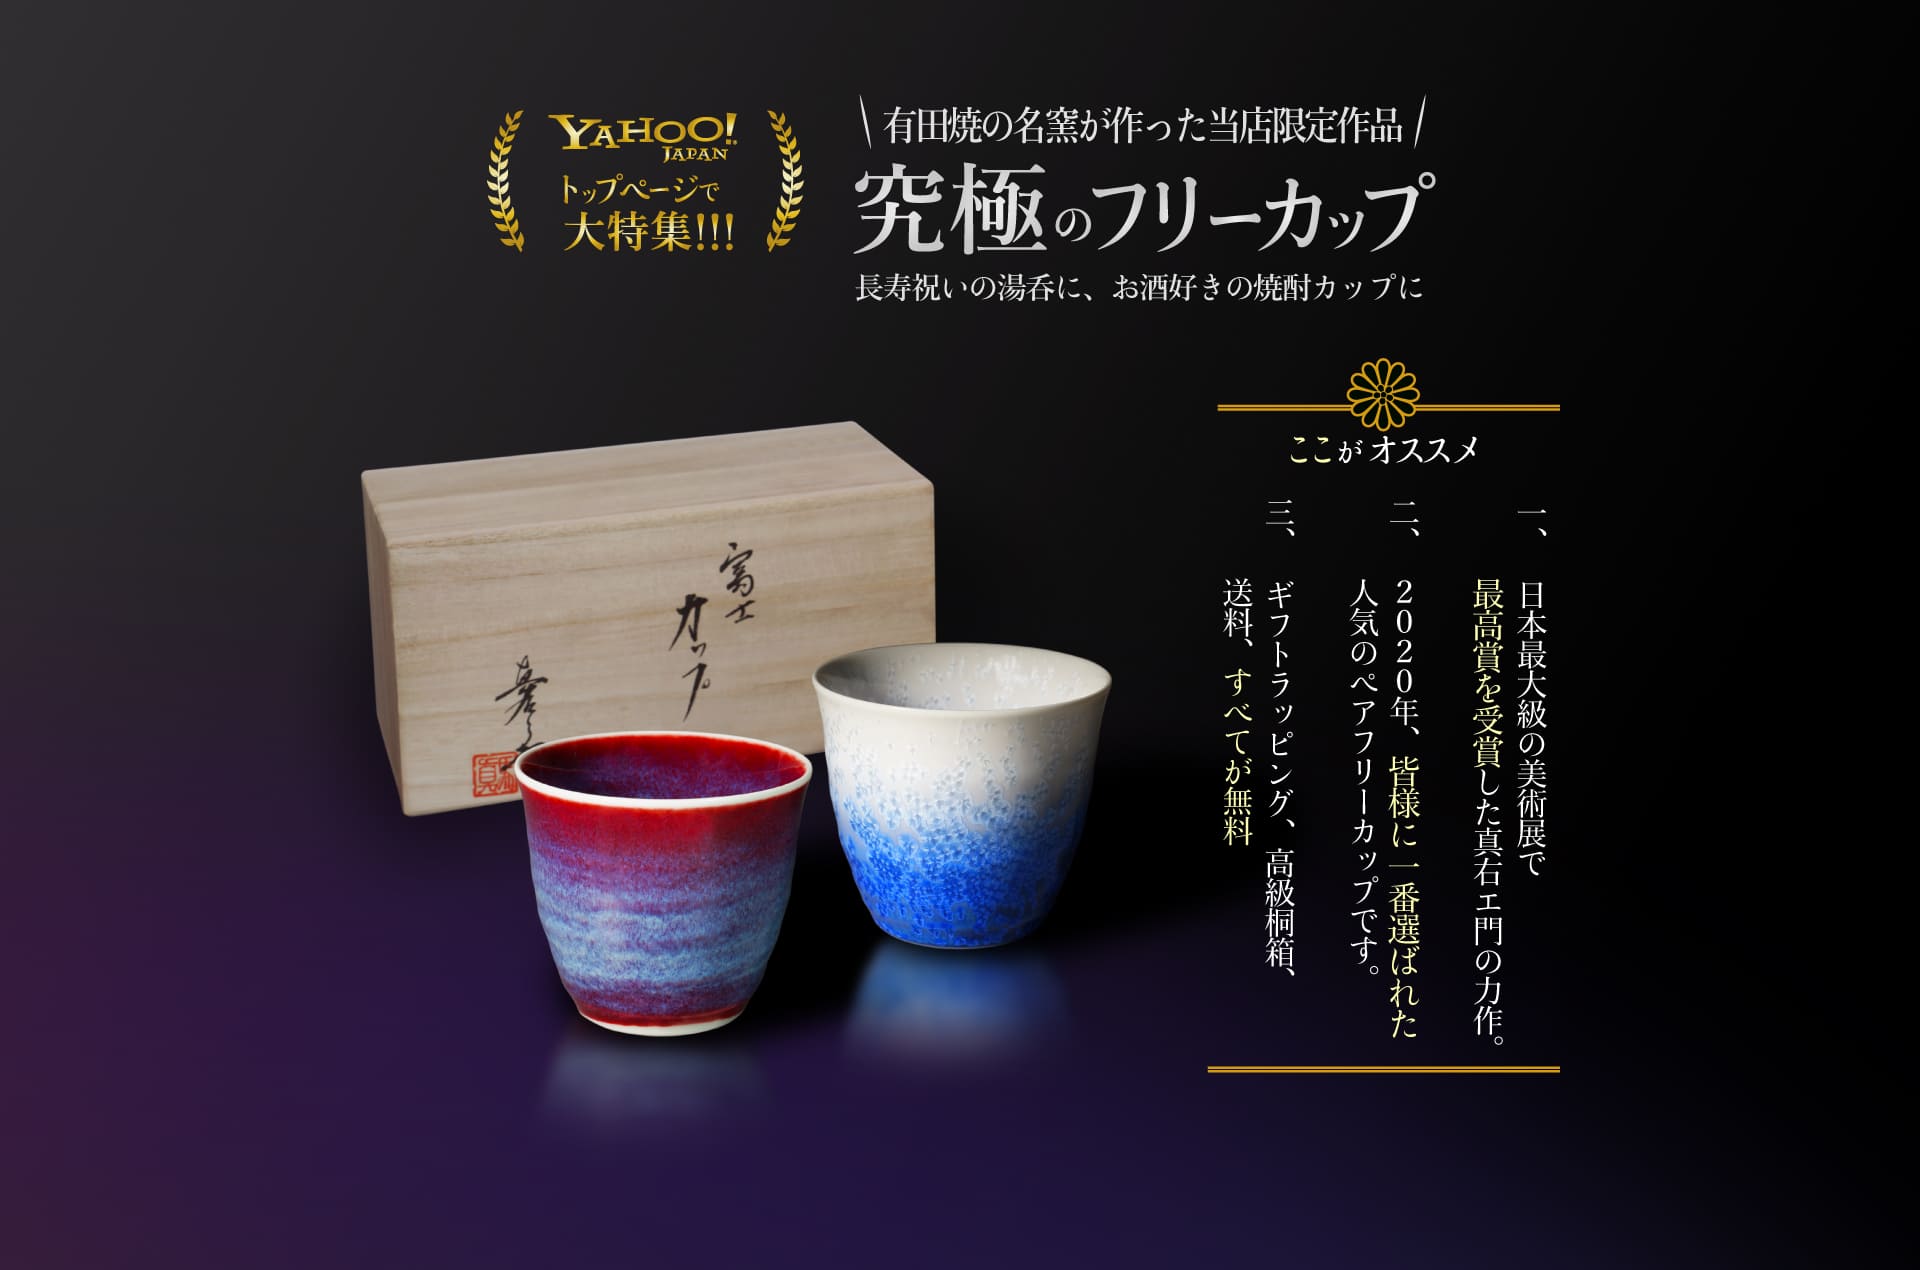 YAHOO！ JAPANトップページで大特集！！！1万セットの累計販売実績！究極のフリーカップ。長寿祝いの湯呑に、お酒好きの焼酎カップに。１．日本最大級の美術展で最高賞を受賞した真右エ門の力作。２．2021年、皆様に一番選ばれた人気のフリーカップです。３．ギフトラッピング、高級桐箱、送料、すべてが無料。